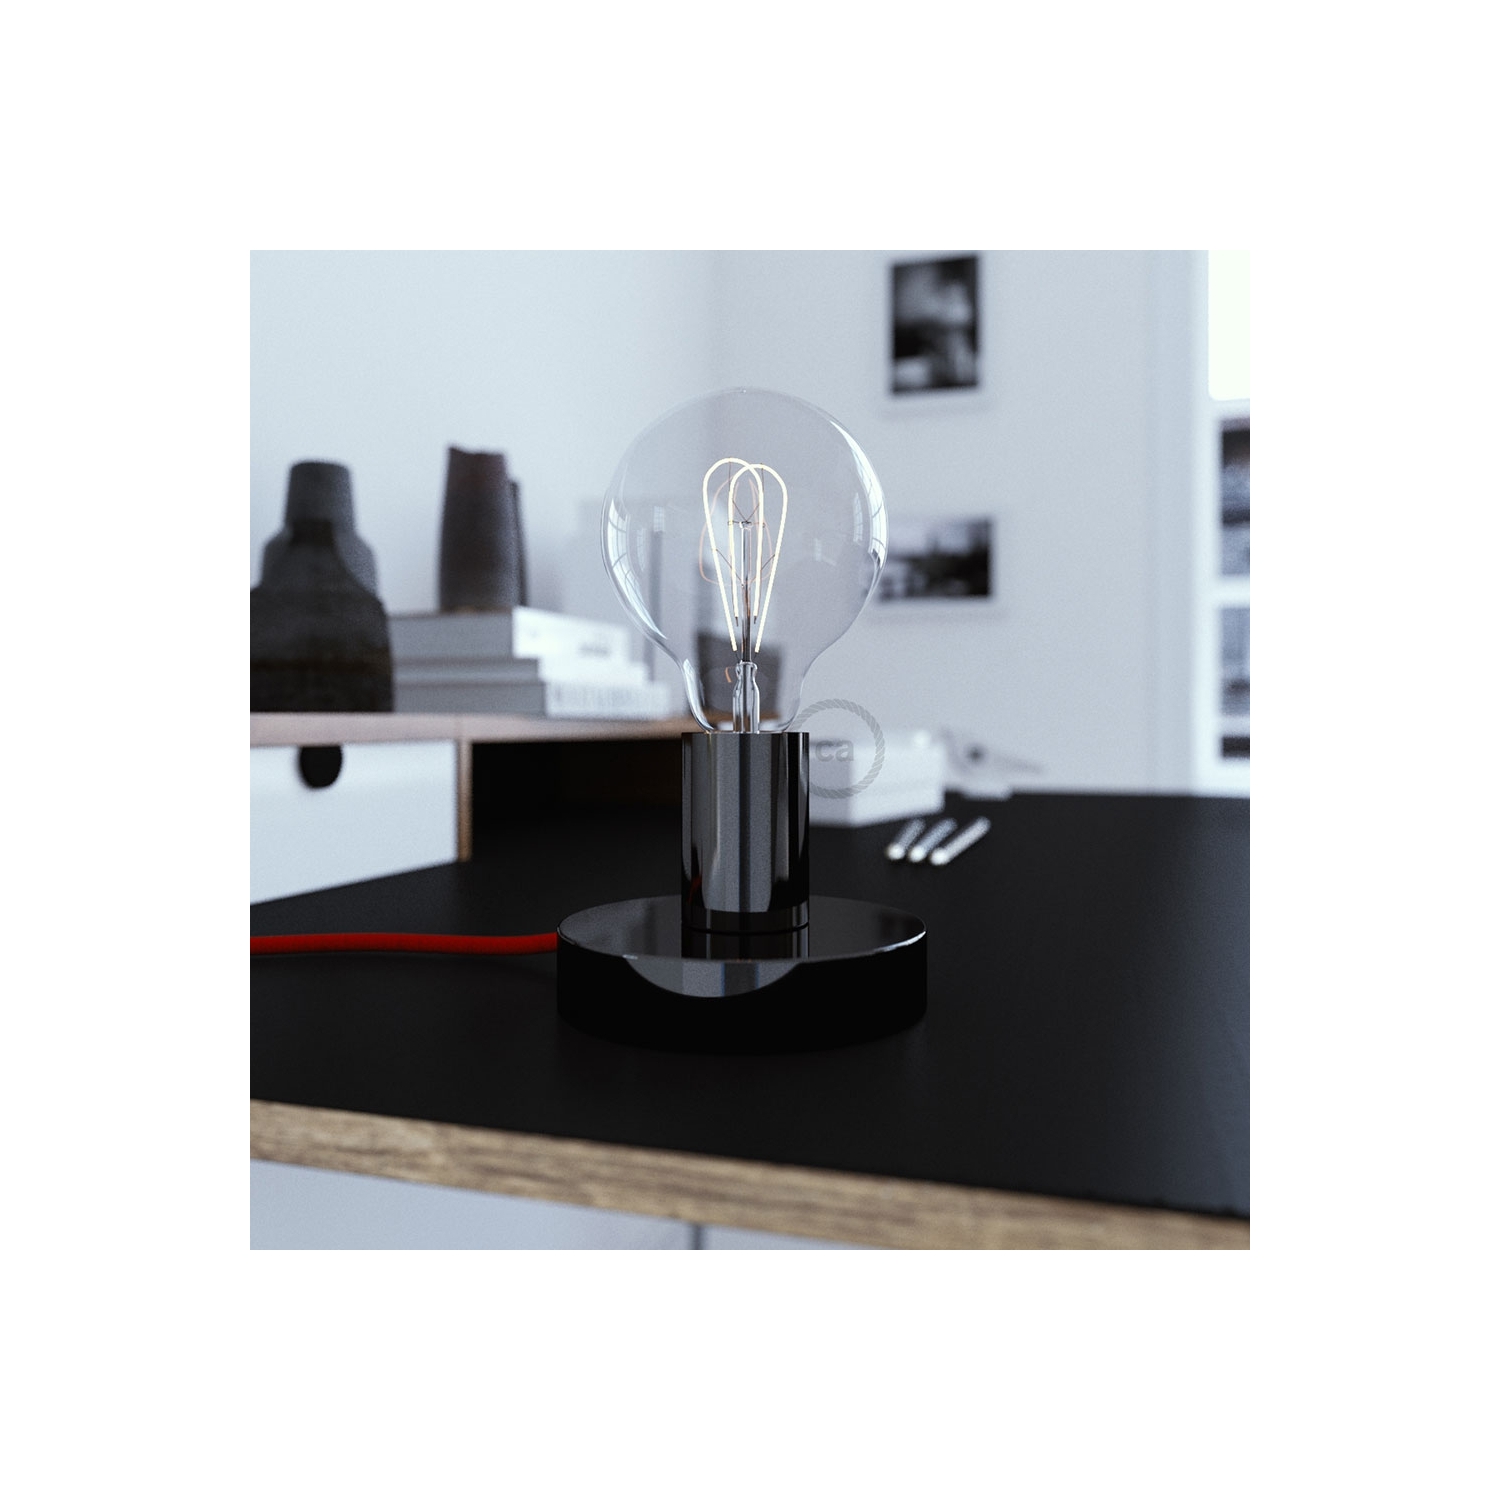 The Posaluce | Black Pearl Metal Table Lamp